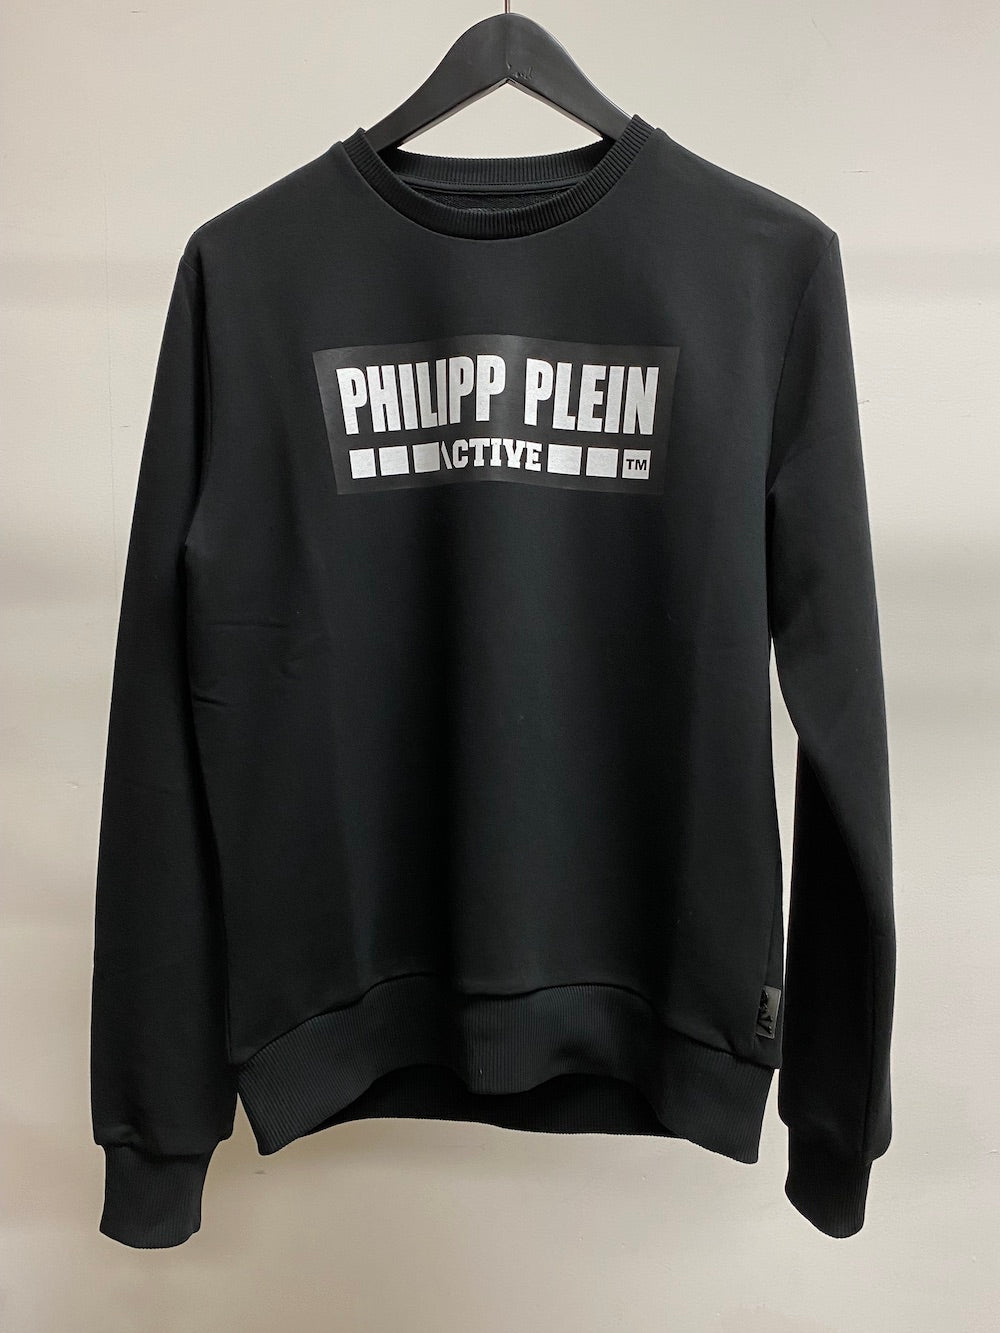 Philipp Plein - Duck Round-Neck T-Shirt - Women - Cotton - L - White